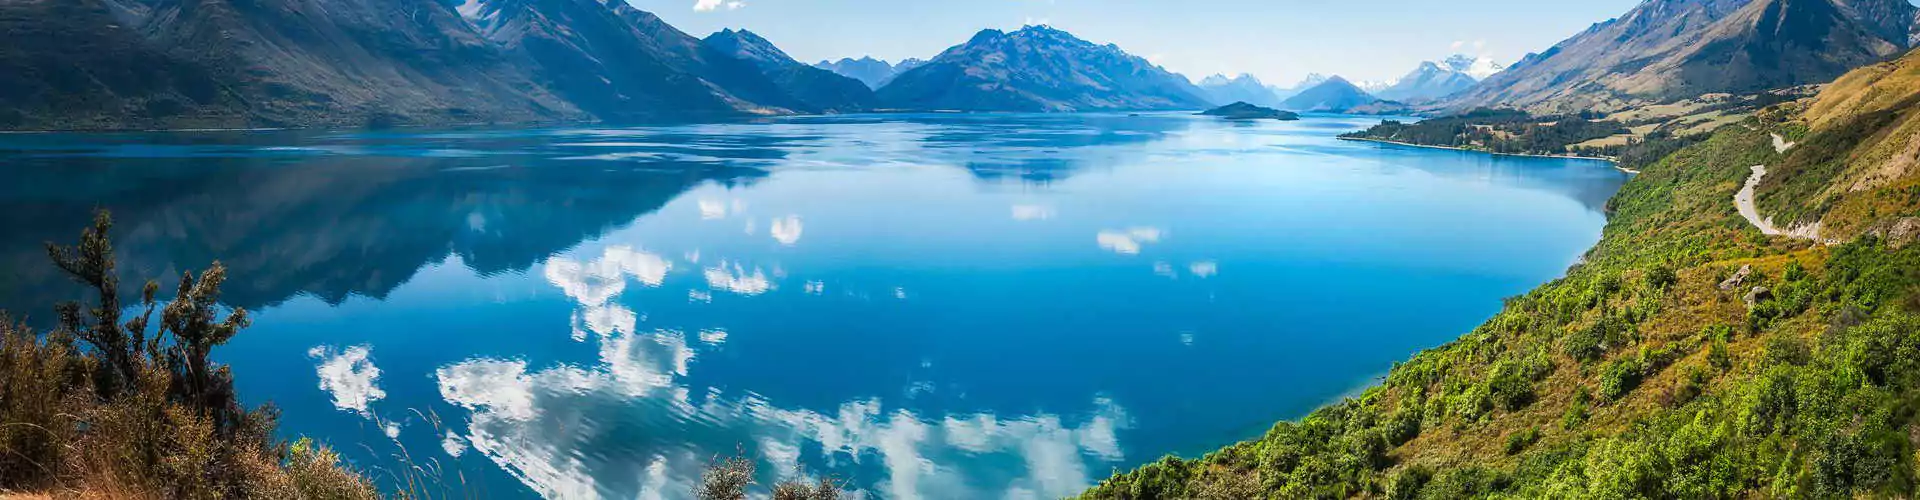 Neuseeland_Rundreisen_Landschaft_Natur_Berge_See